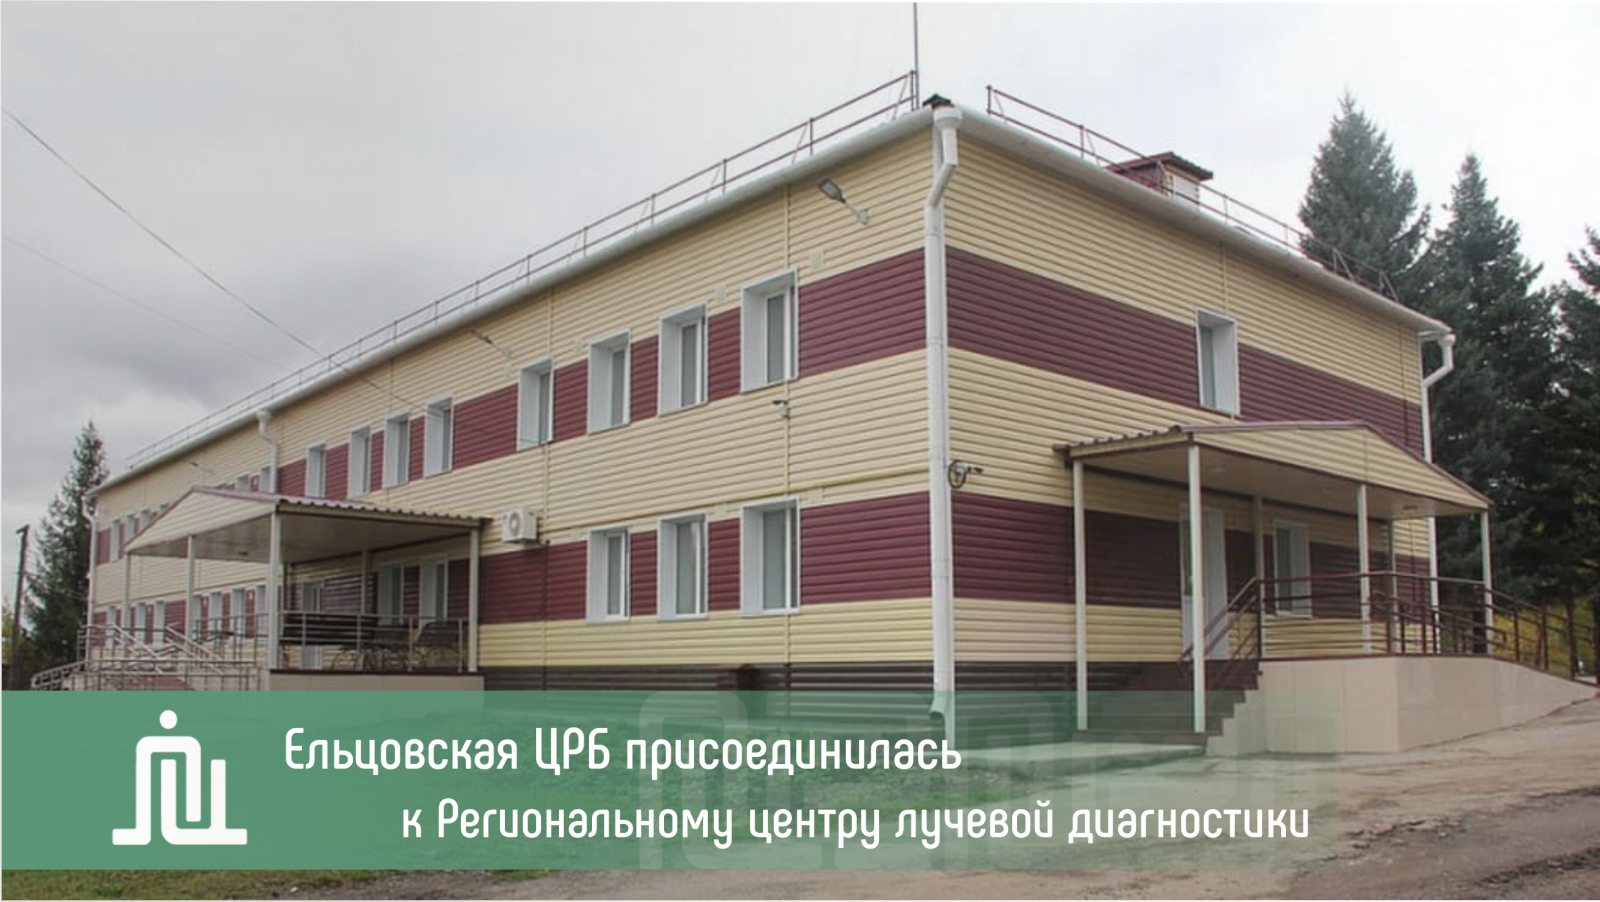 Ельцовская ЦРБ присоединилась к Региональному центру лучевой диагностики